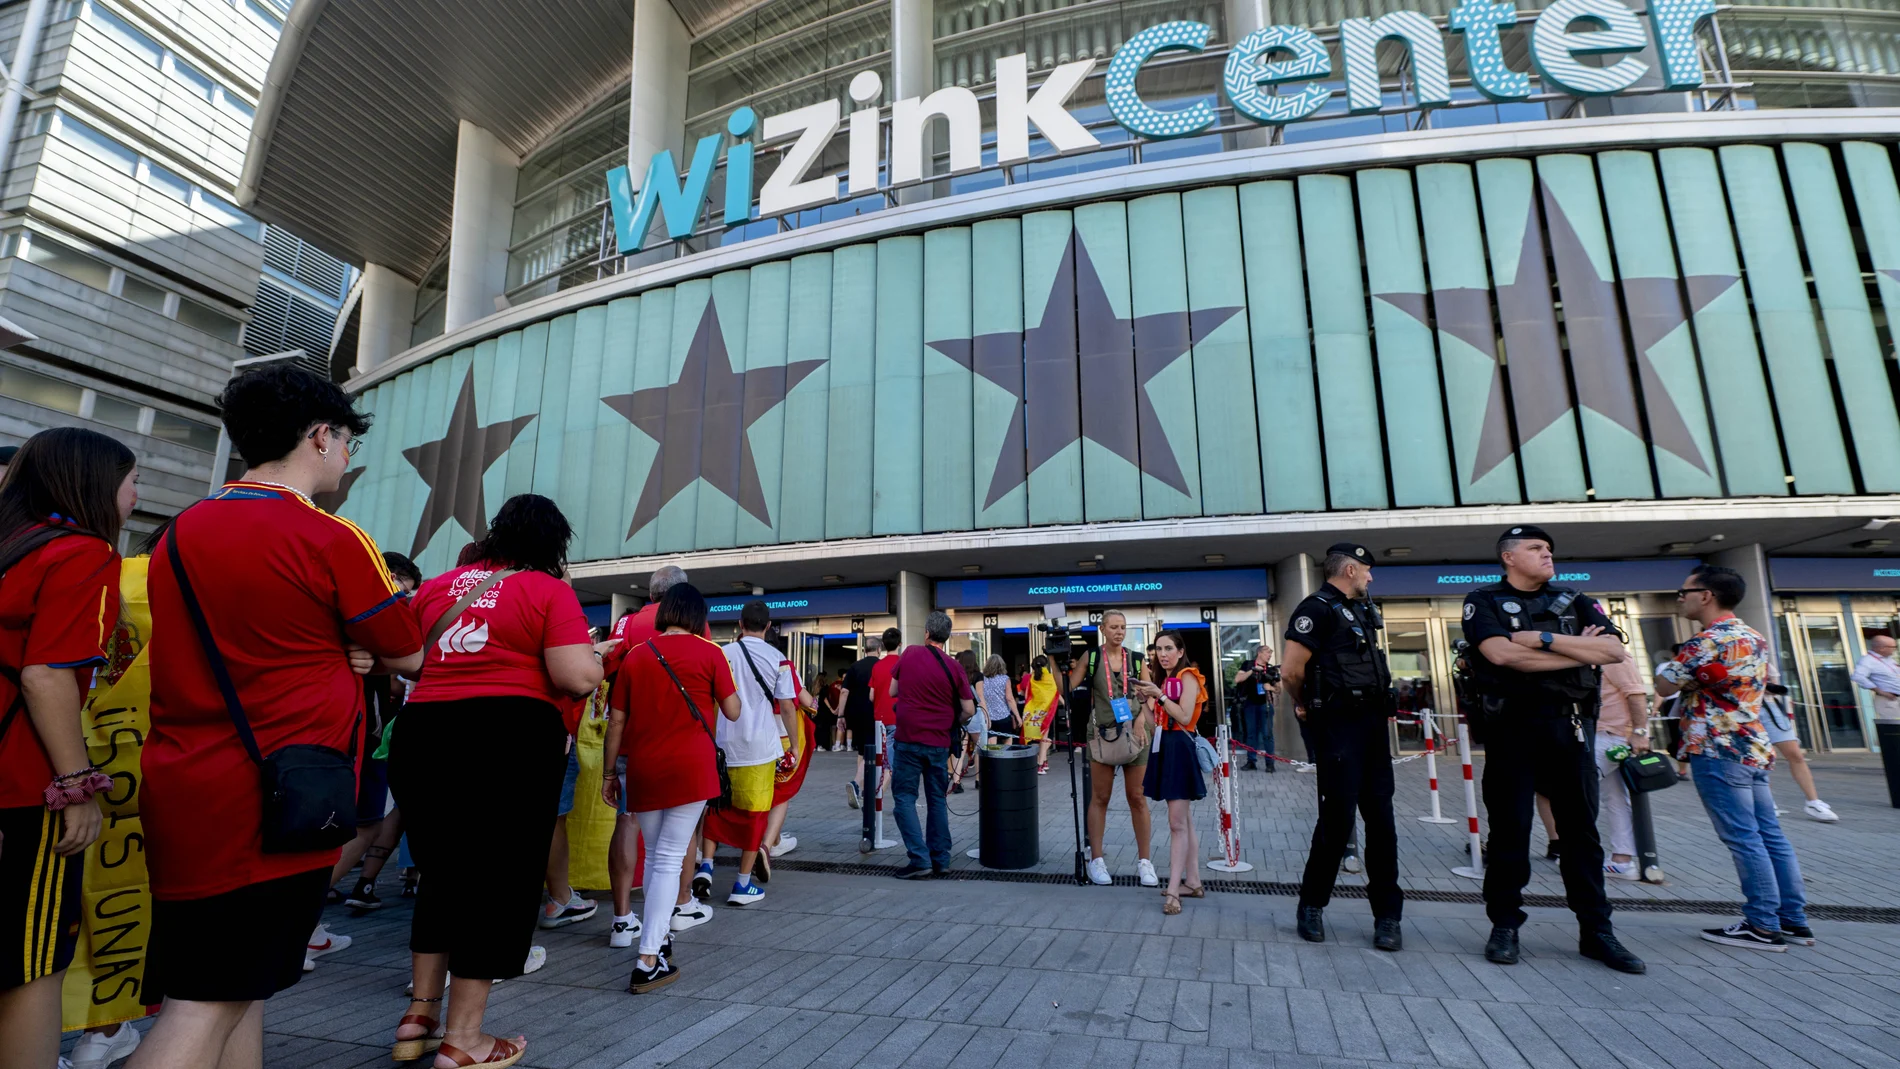 El WiZink Center, cuarto recinto con mayor venta de entradas del mundo en 2023, según el Top 200 World Arenas